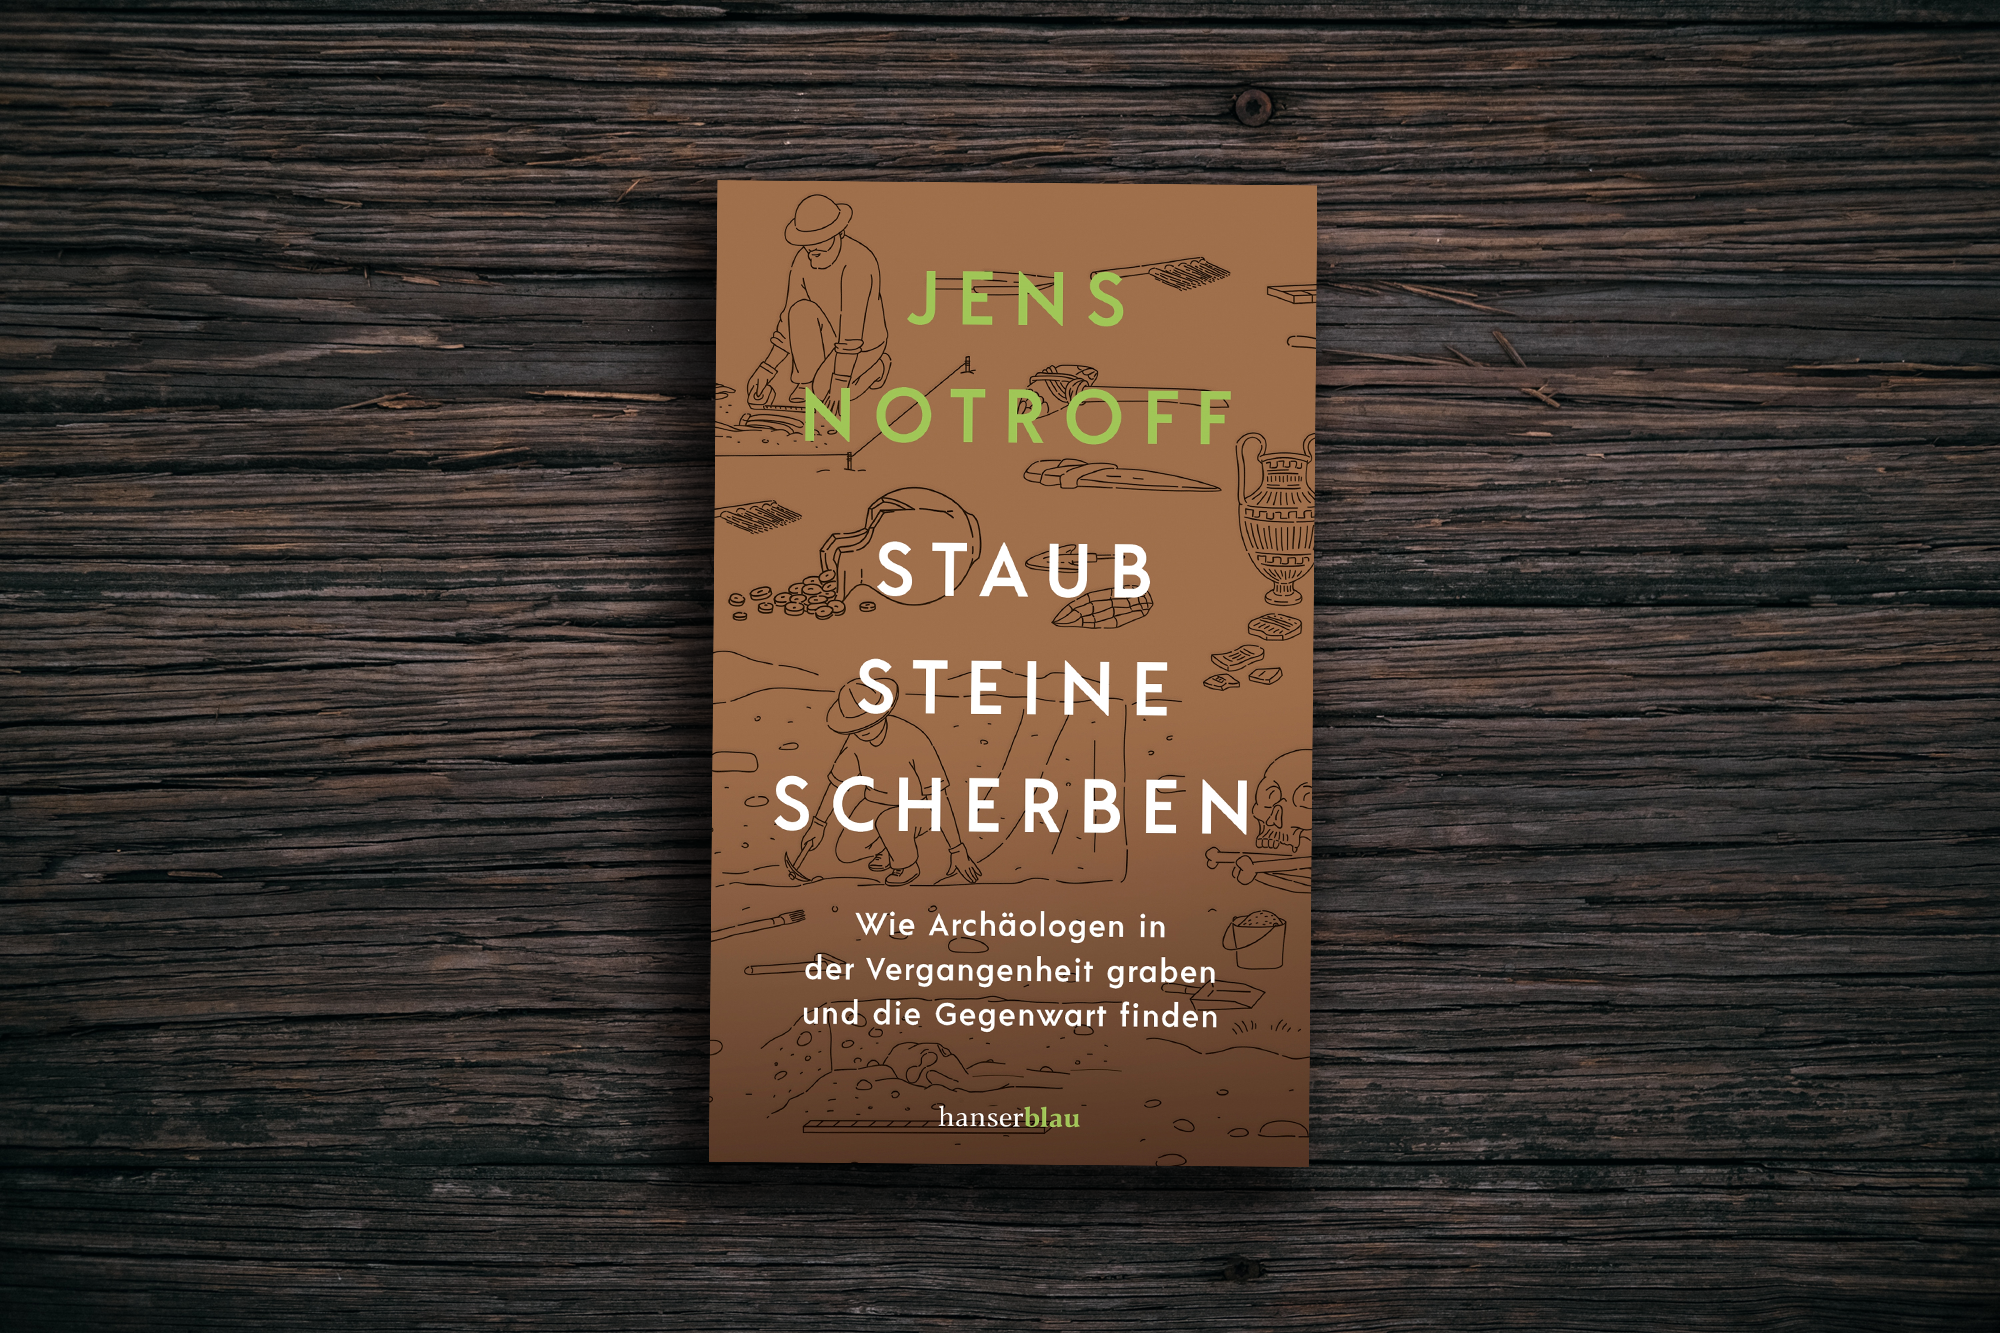 Cover of the book "Staub Steine Scherben" by Jens Notroff. Background by Joshua Bartell on Unsplash